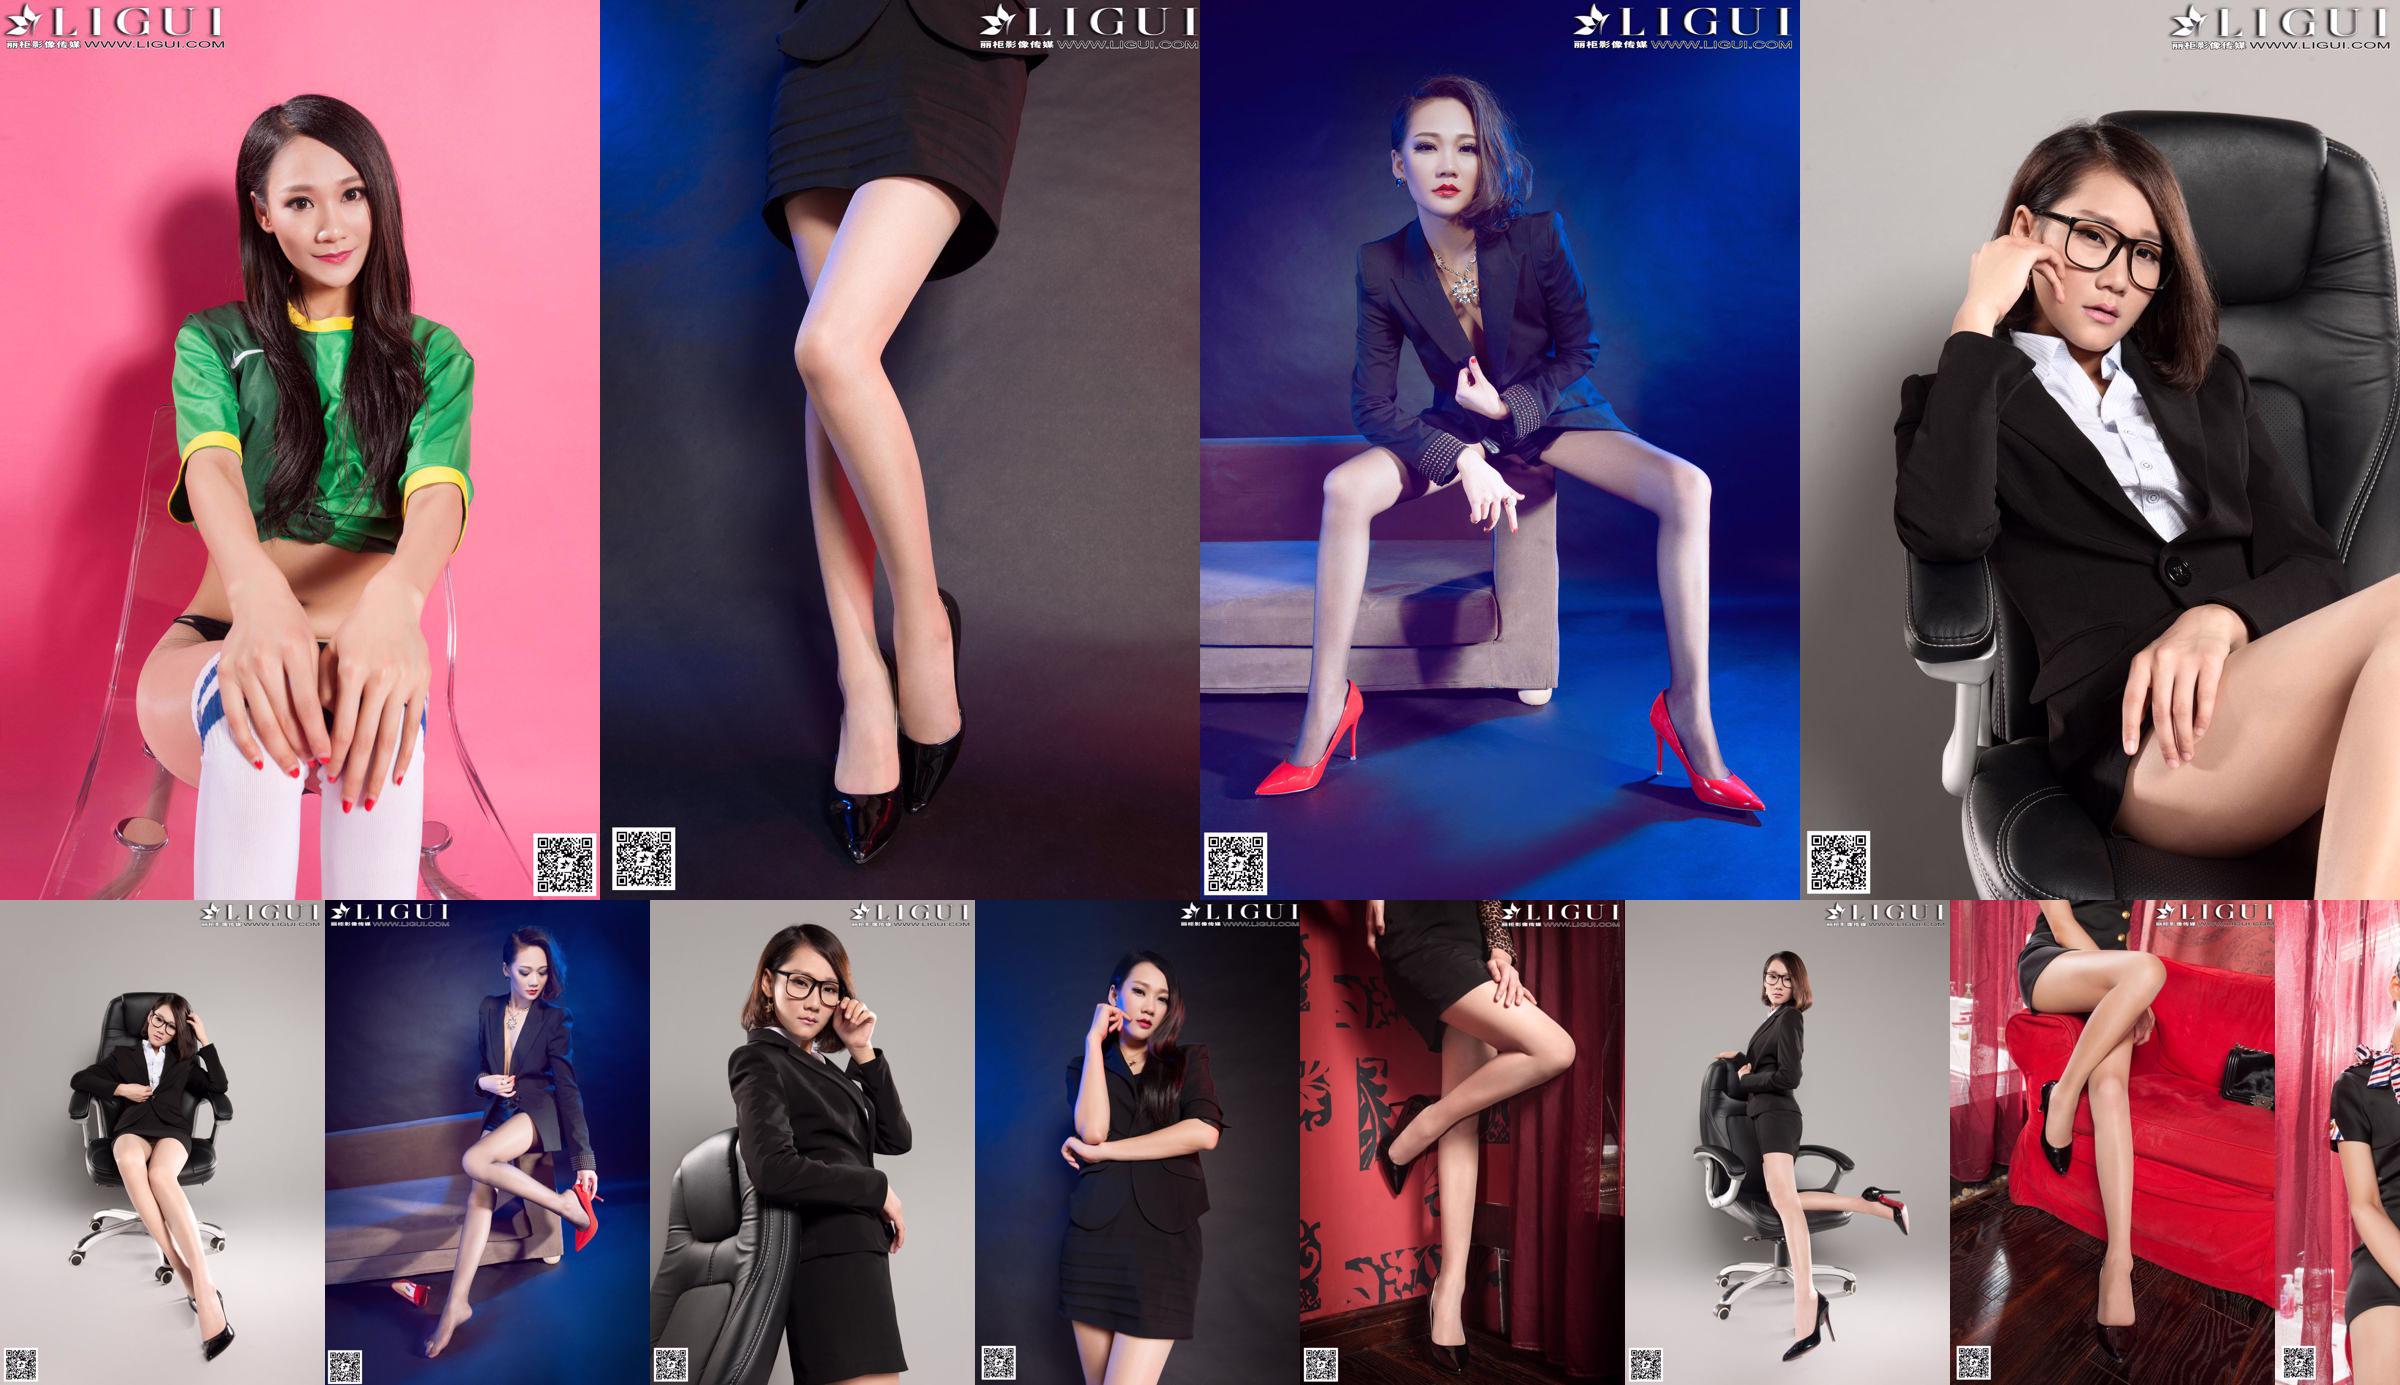 [丽 柜 LiGui] Bộ sưu tập đầy đủ các bức ảnh chụp chân ngọc và chân dài của người mẫu Mandy "Professional Wear high-shoe Feet" No.9e5eb6 Trang 1